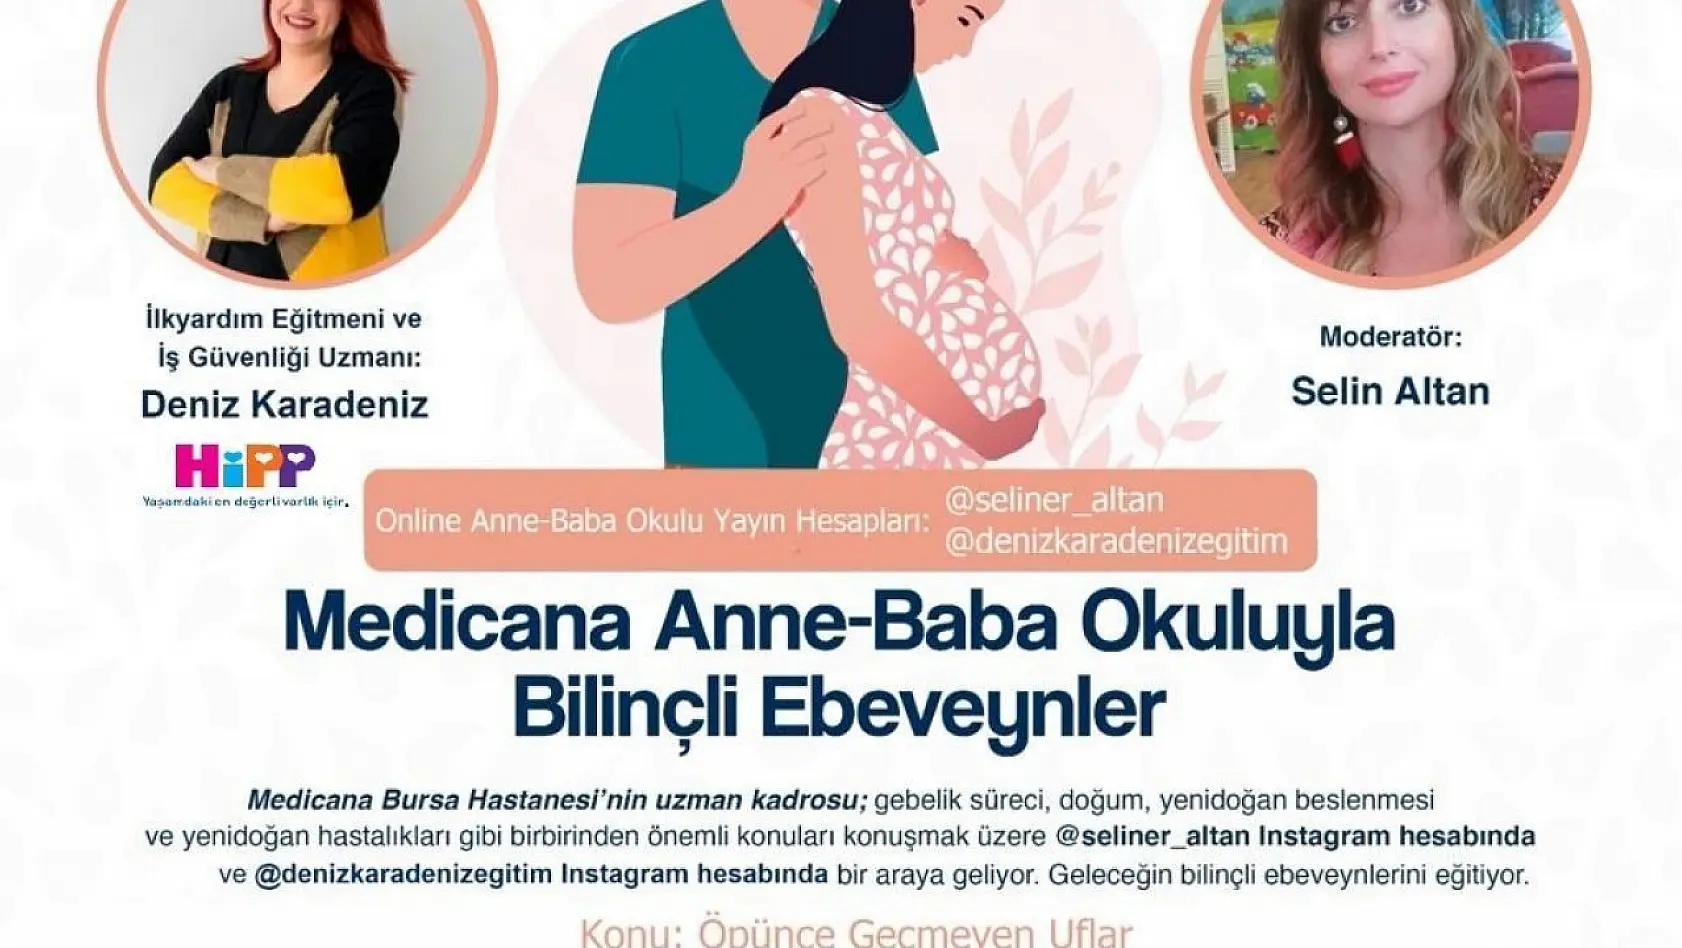 Online gebe okulunun konuğu ilkyardım eğitmeni Deniz Karadeniz